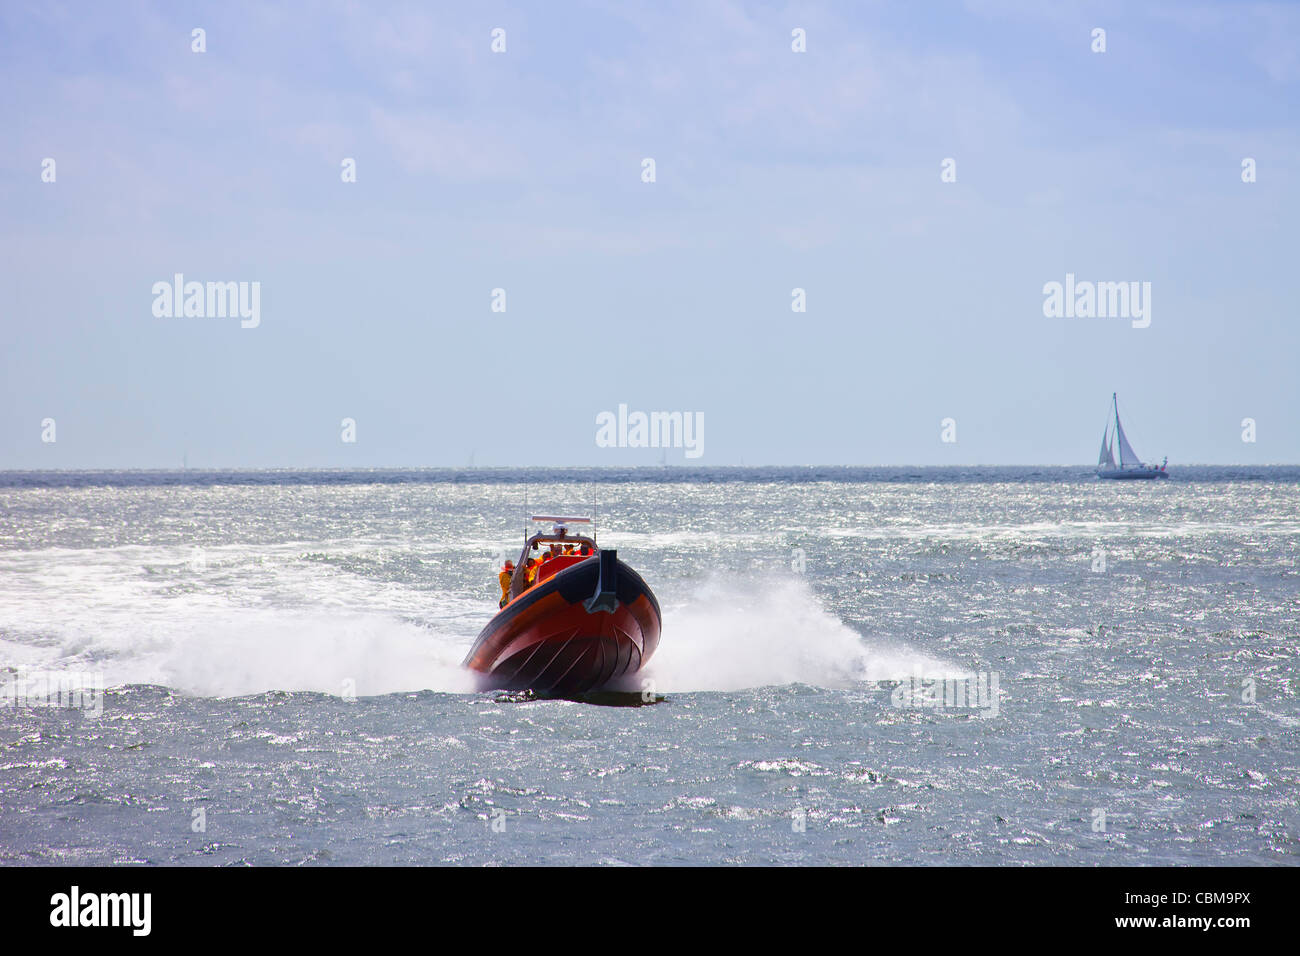 Life saving boat at sea Stock Photo